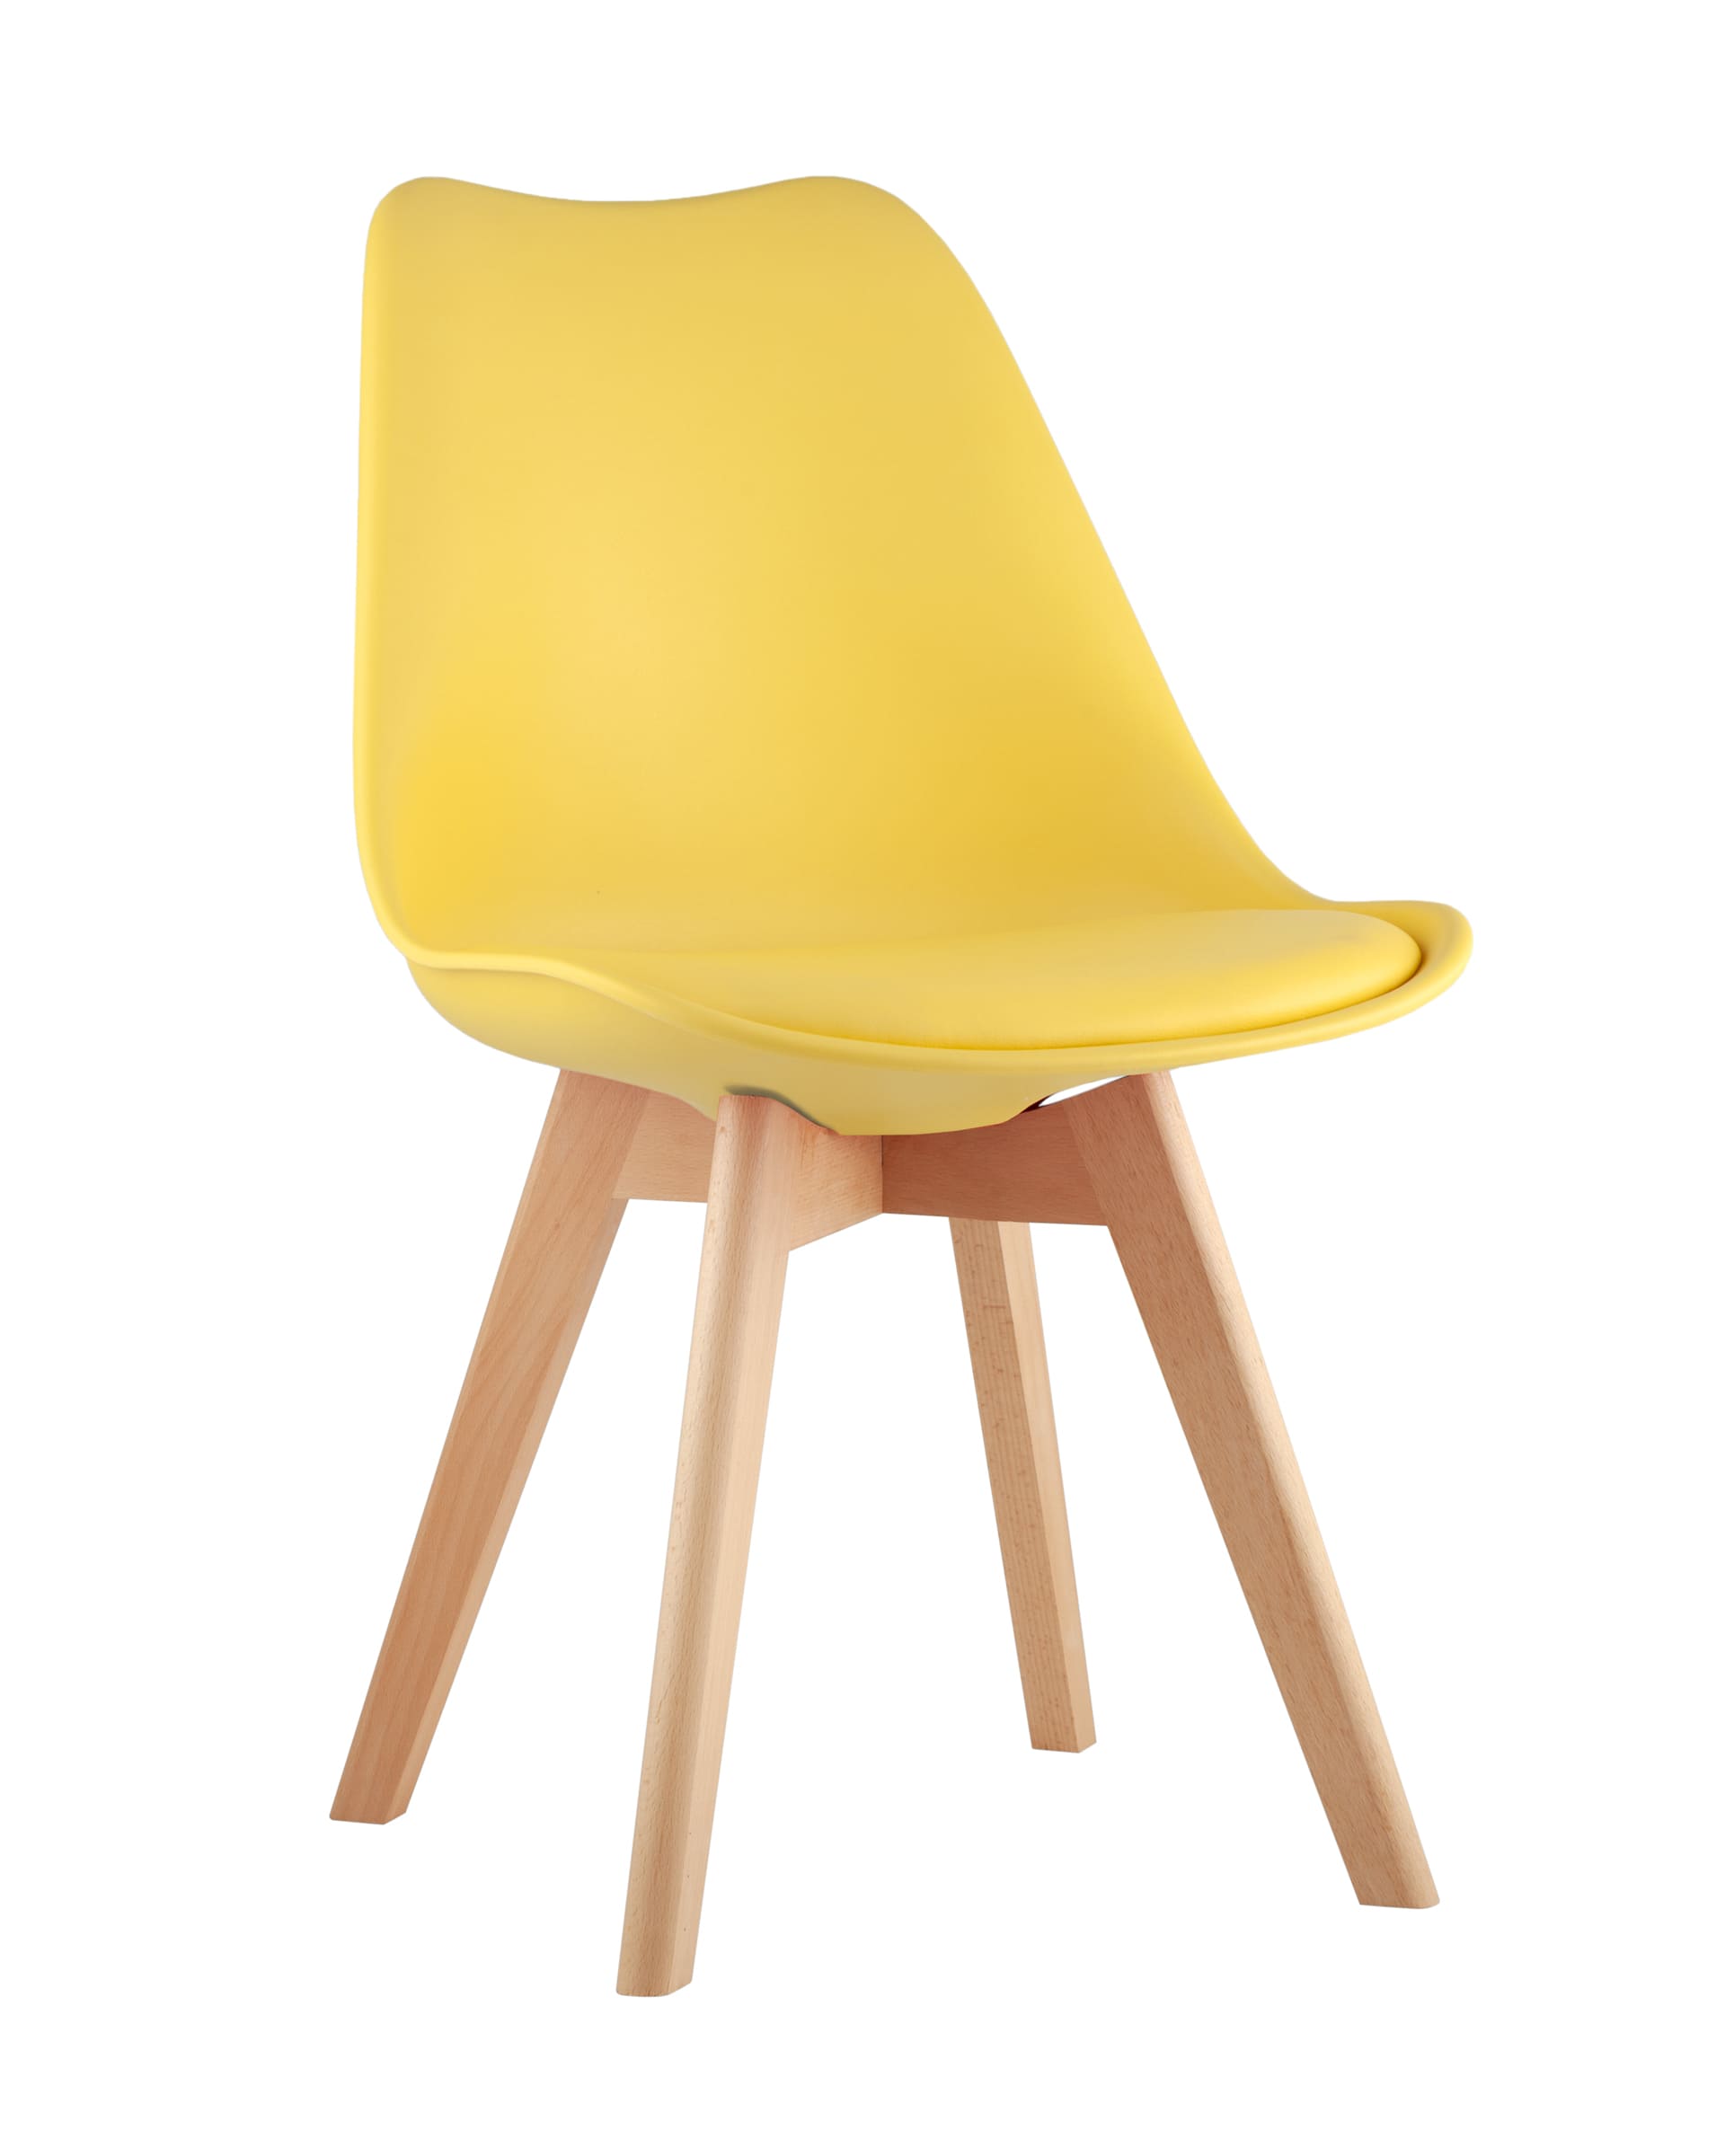 Stool Group Frankfurt желтый, сиденье из сочетания пластика и экокожи, ножки деревянные